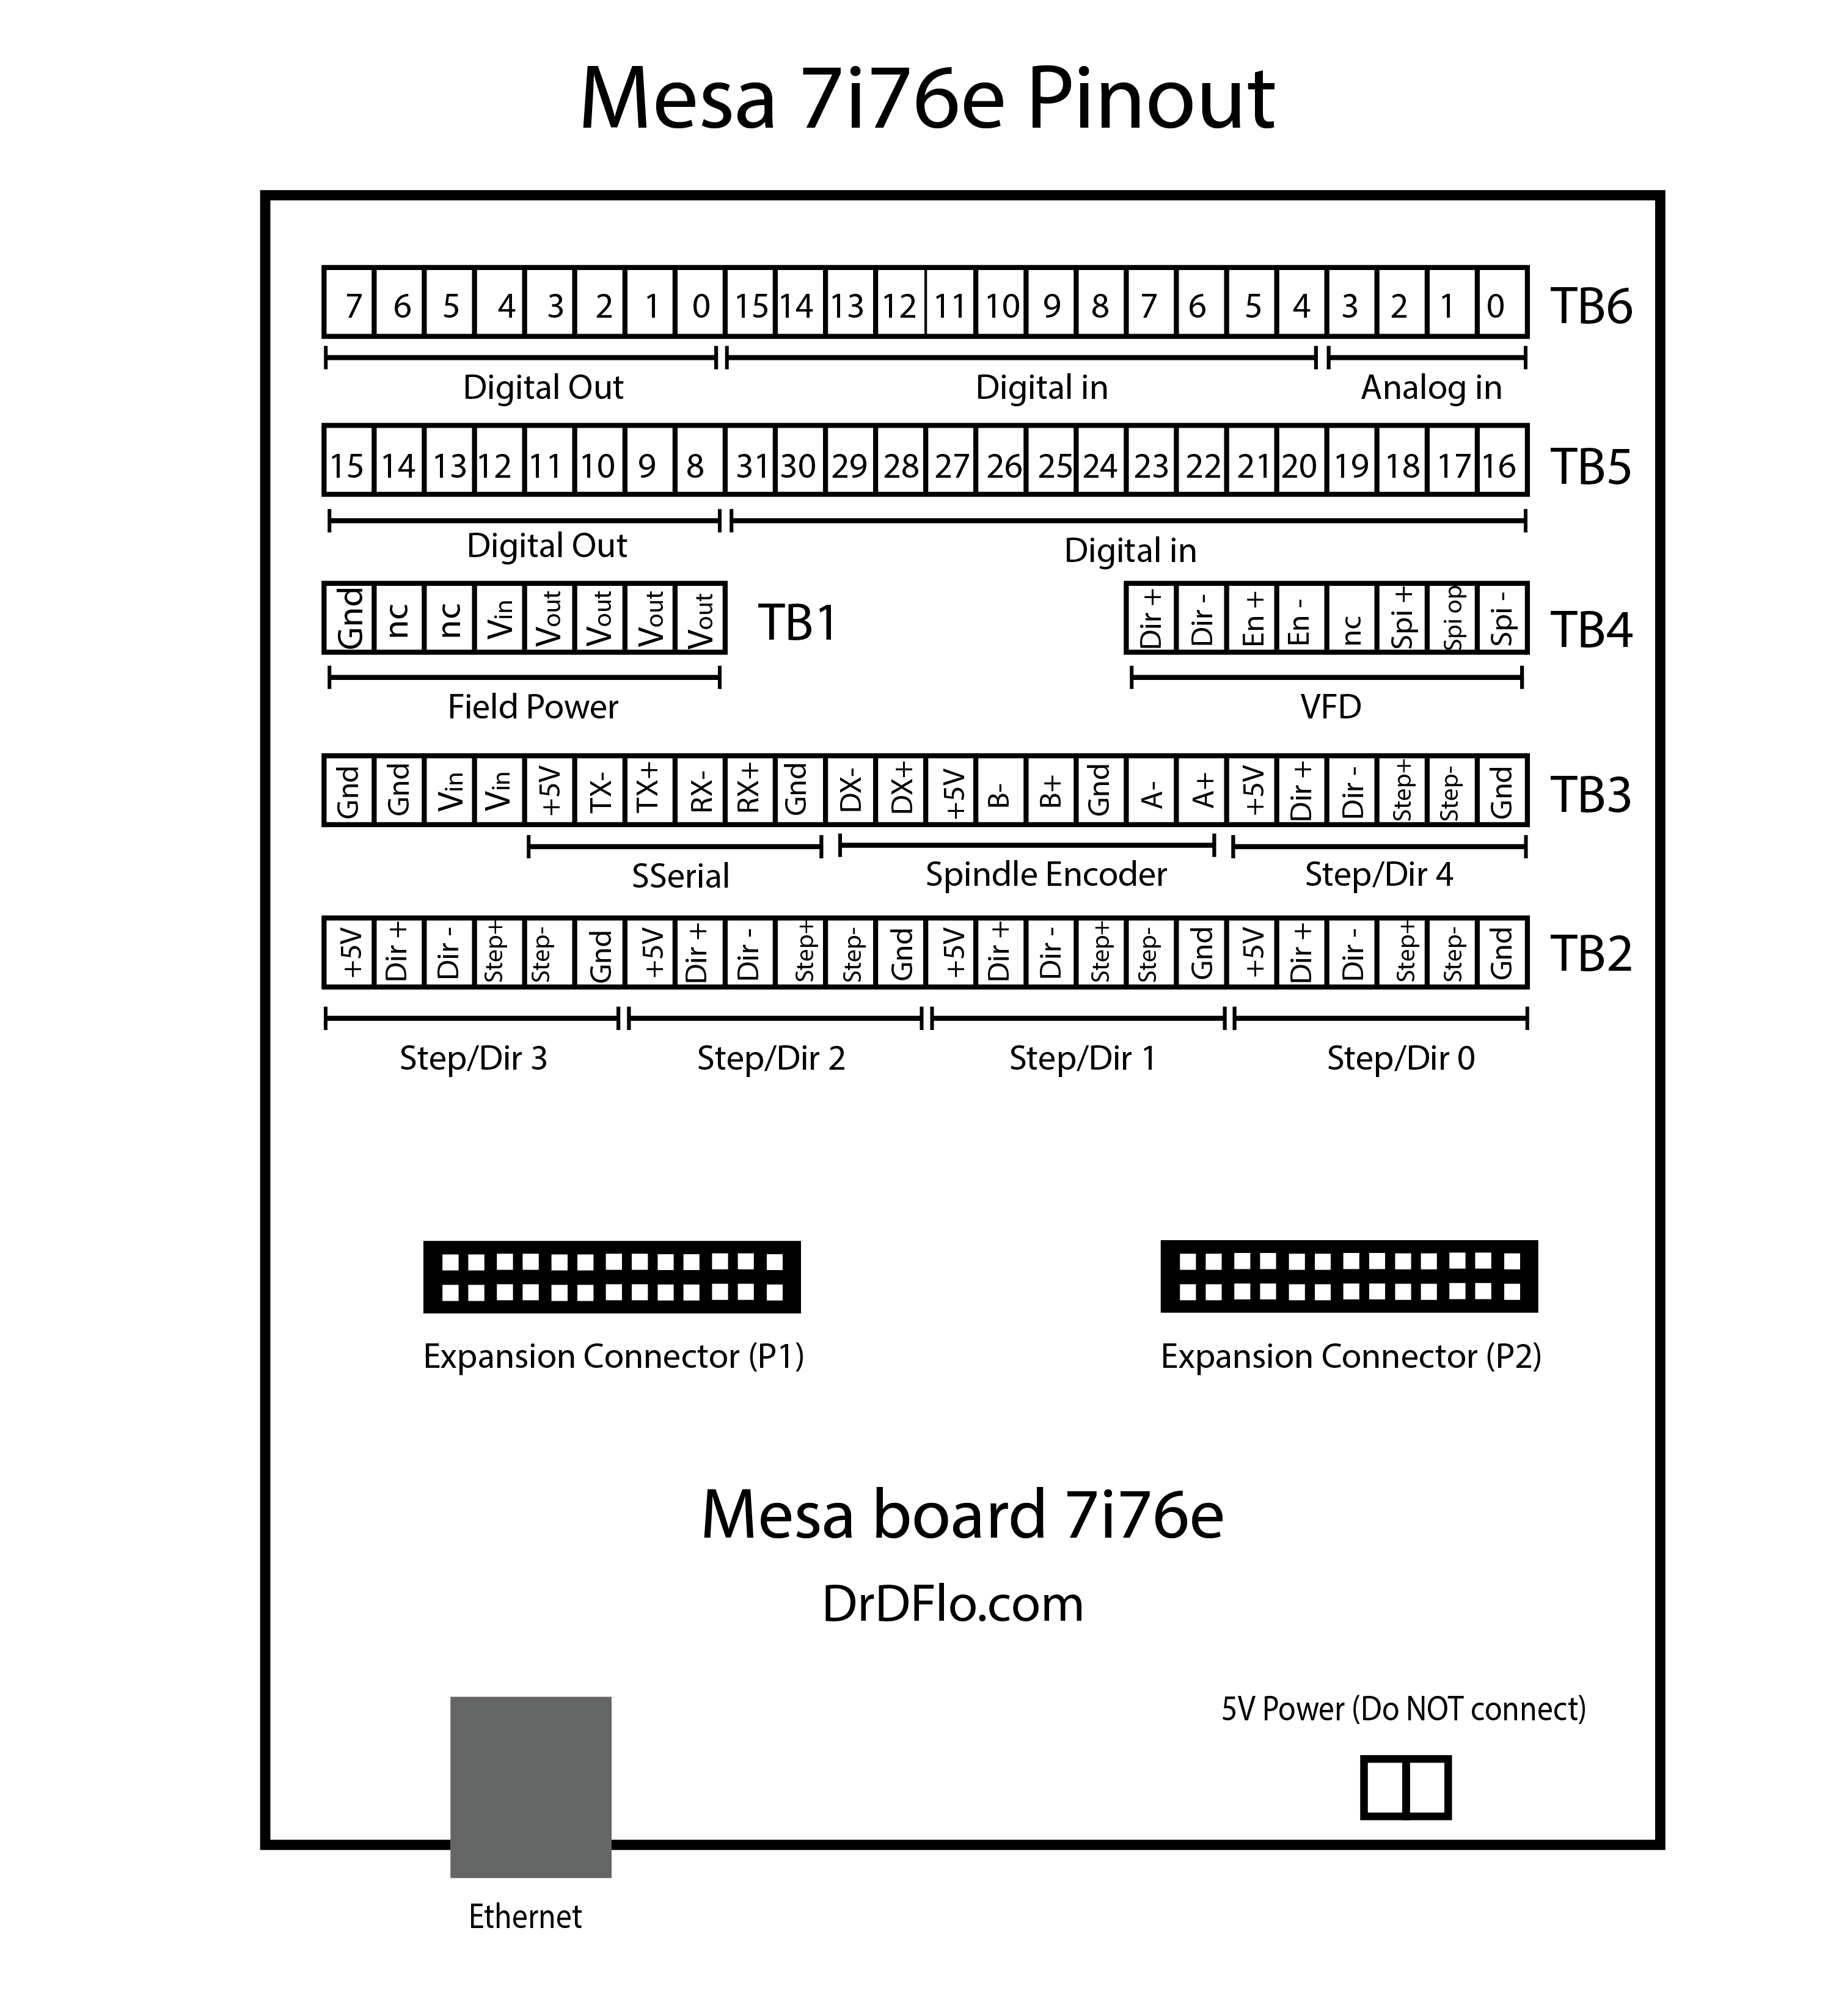 Mesa 7i76e pinout and wiring diagram.